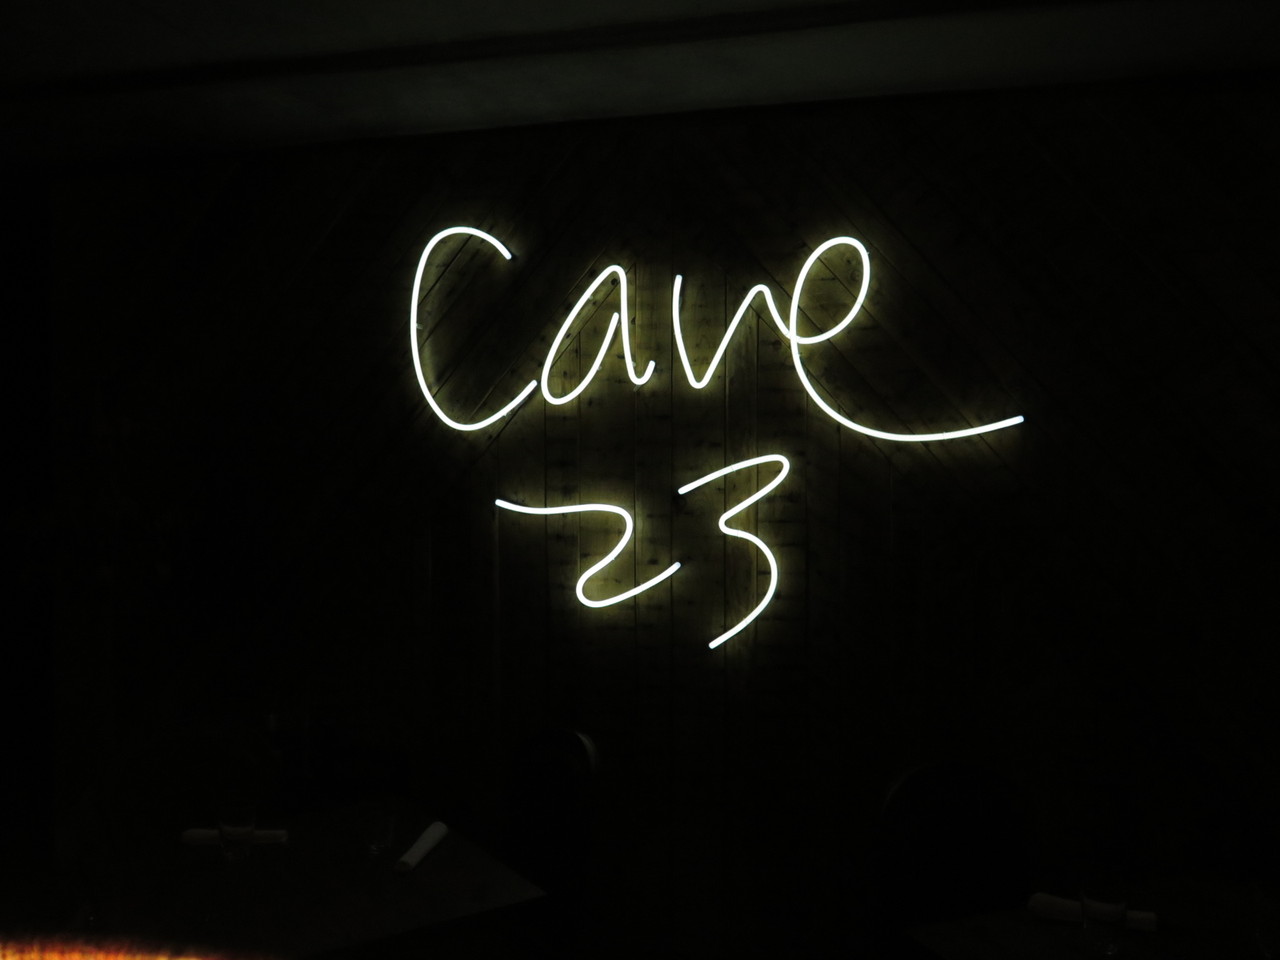 CAVE 23, o restaurante de Ana Moura